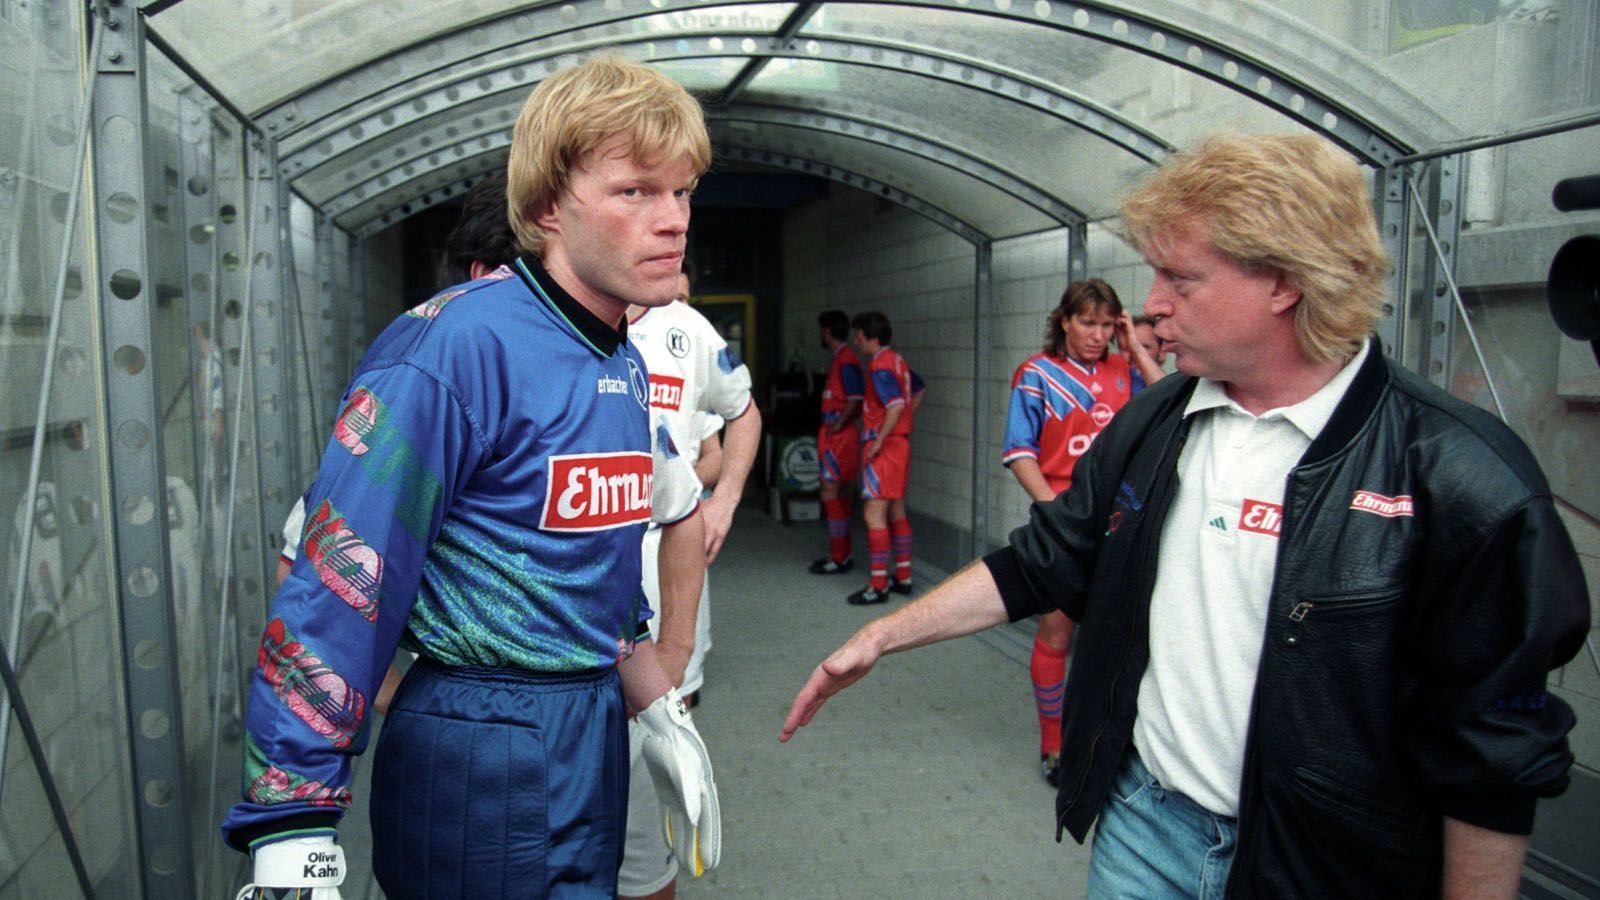 
                <strong>1994 zieht es Kahn von Karlsruhe nach München</strong><br>
                Doch Kahn geht bei seinem Heimatklub und unter Trainer Winfried Schäfer seinen Weg. 149 Pflichtspiele später, im Jahr 1994, verpflichtet Rekordmeister Bayern München den damals 25 Jahre alten Schlussmann für umgerechnet 2,3 Millionen Euro vom KSC.
              